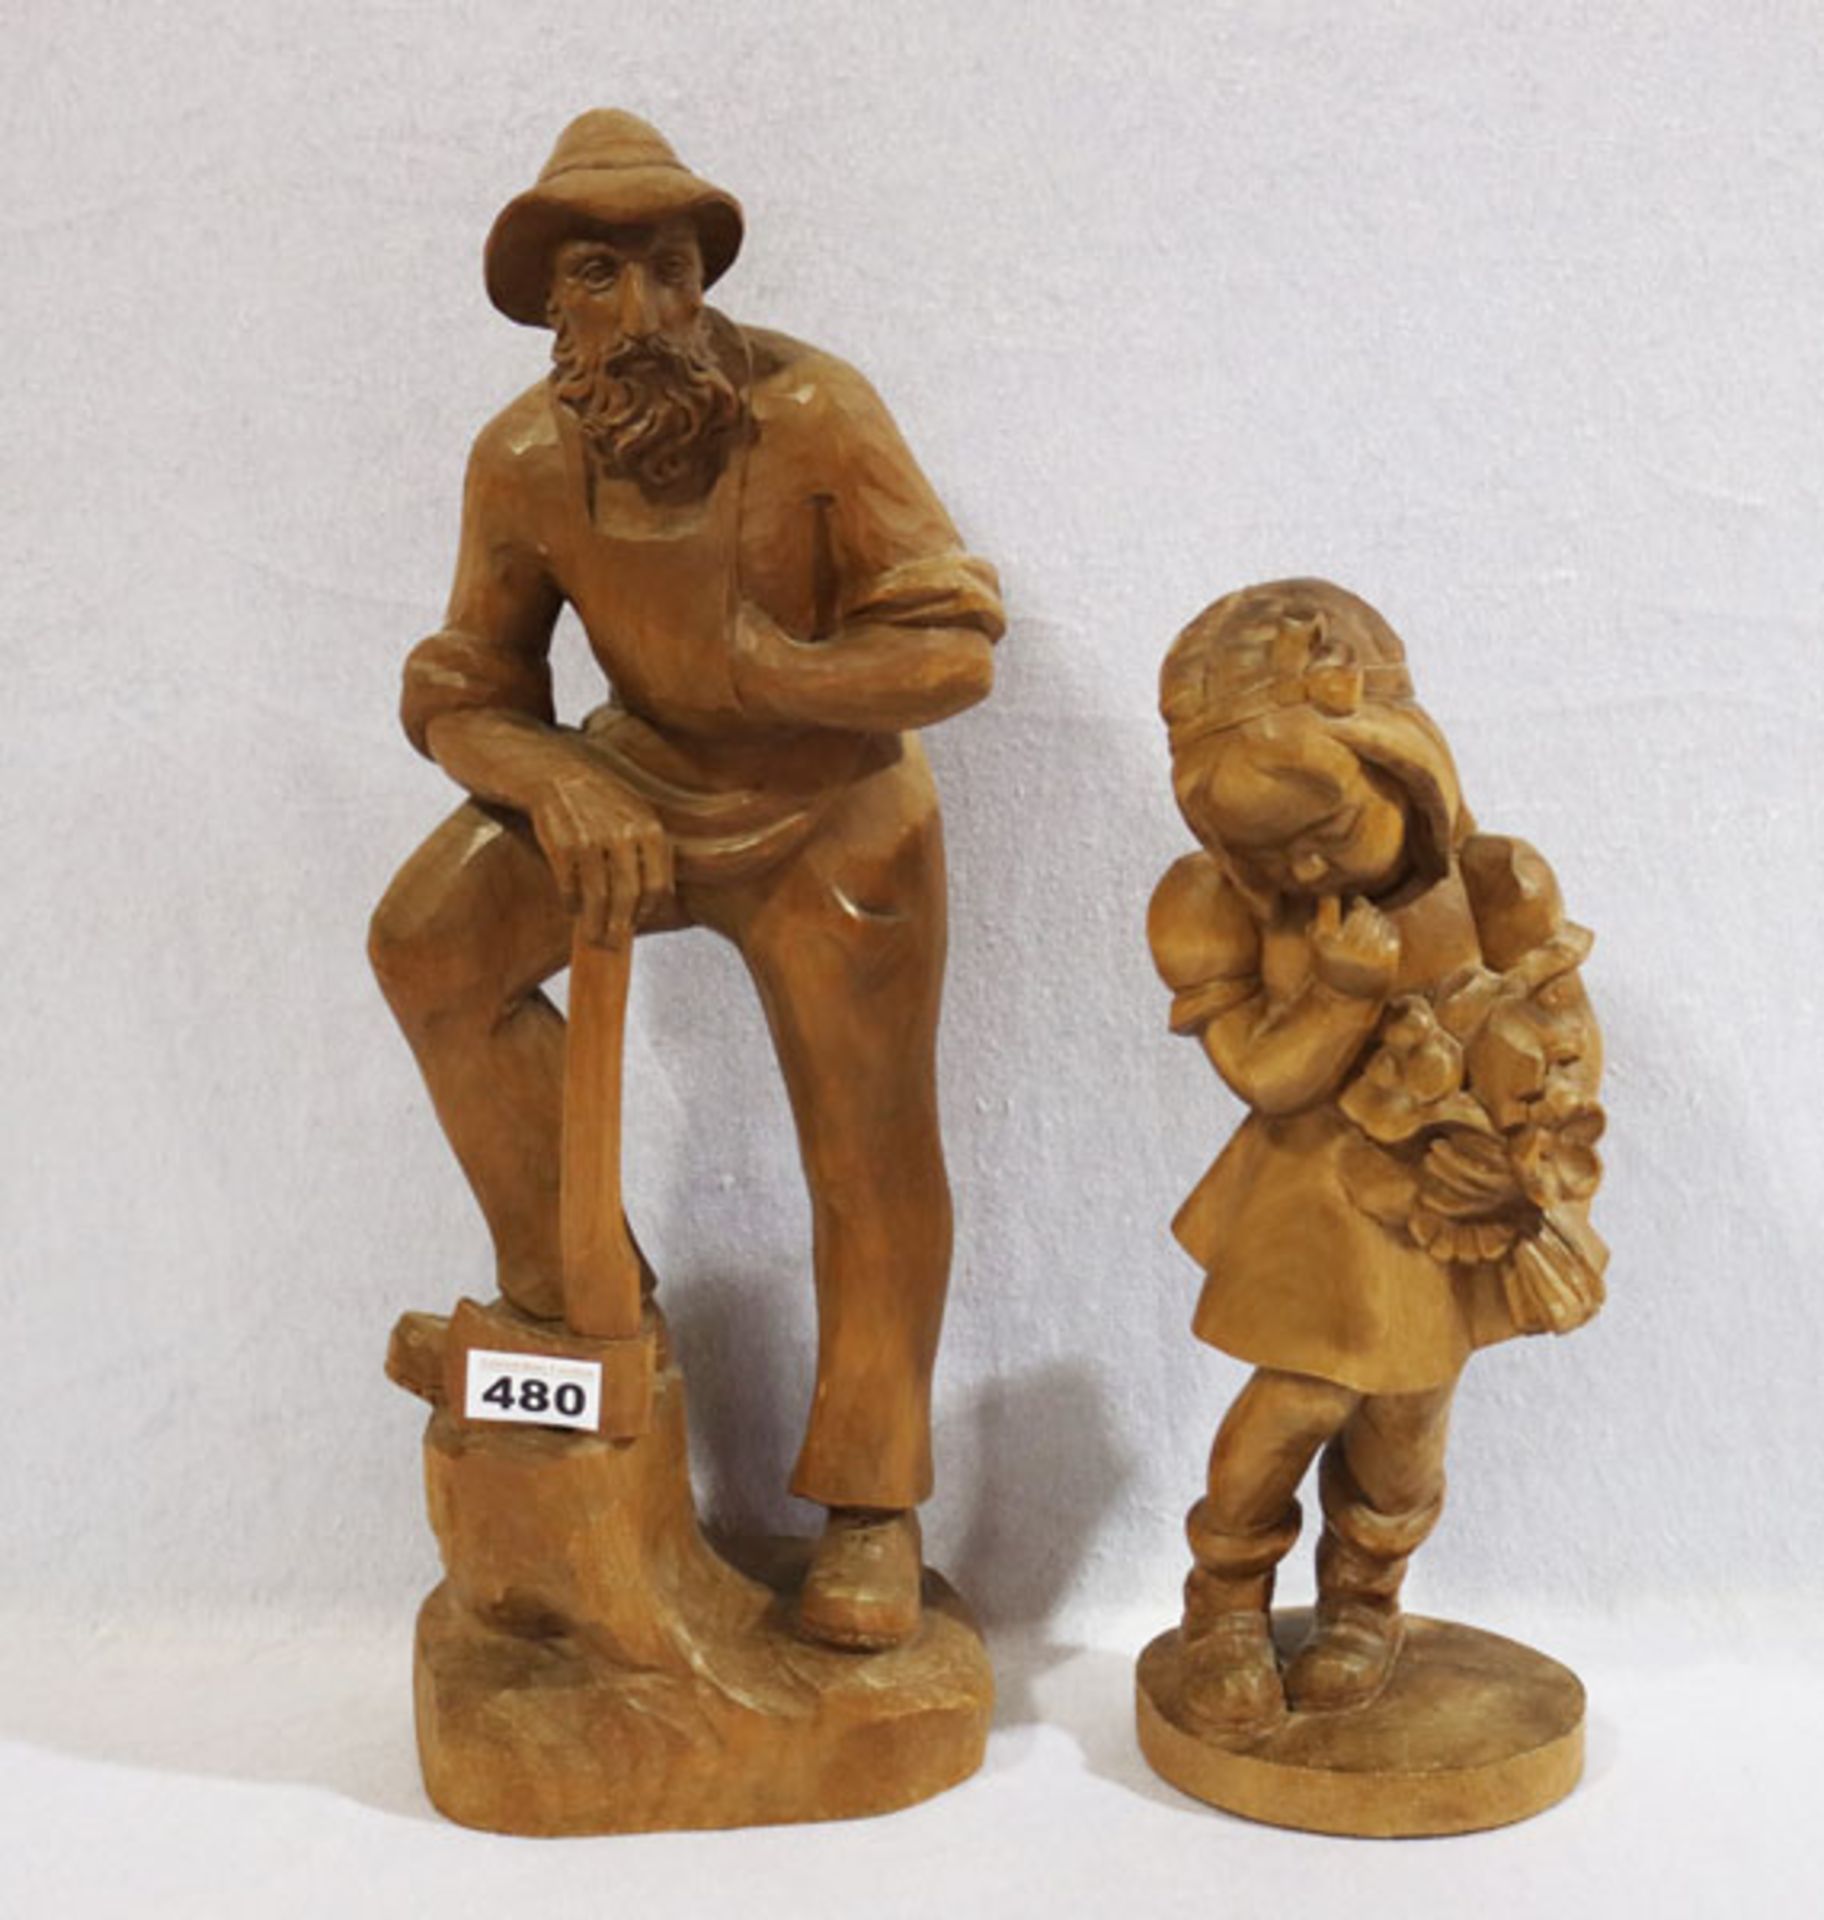 2 Holzfiguren 'Mädchen mit Blumen', H 36 cm, und 'Holzhacker', H 48 cm, beide dunkel gebeizt